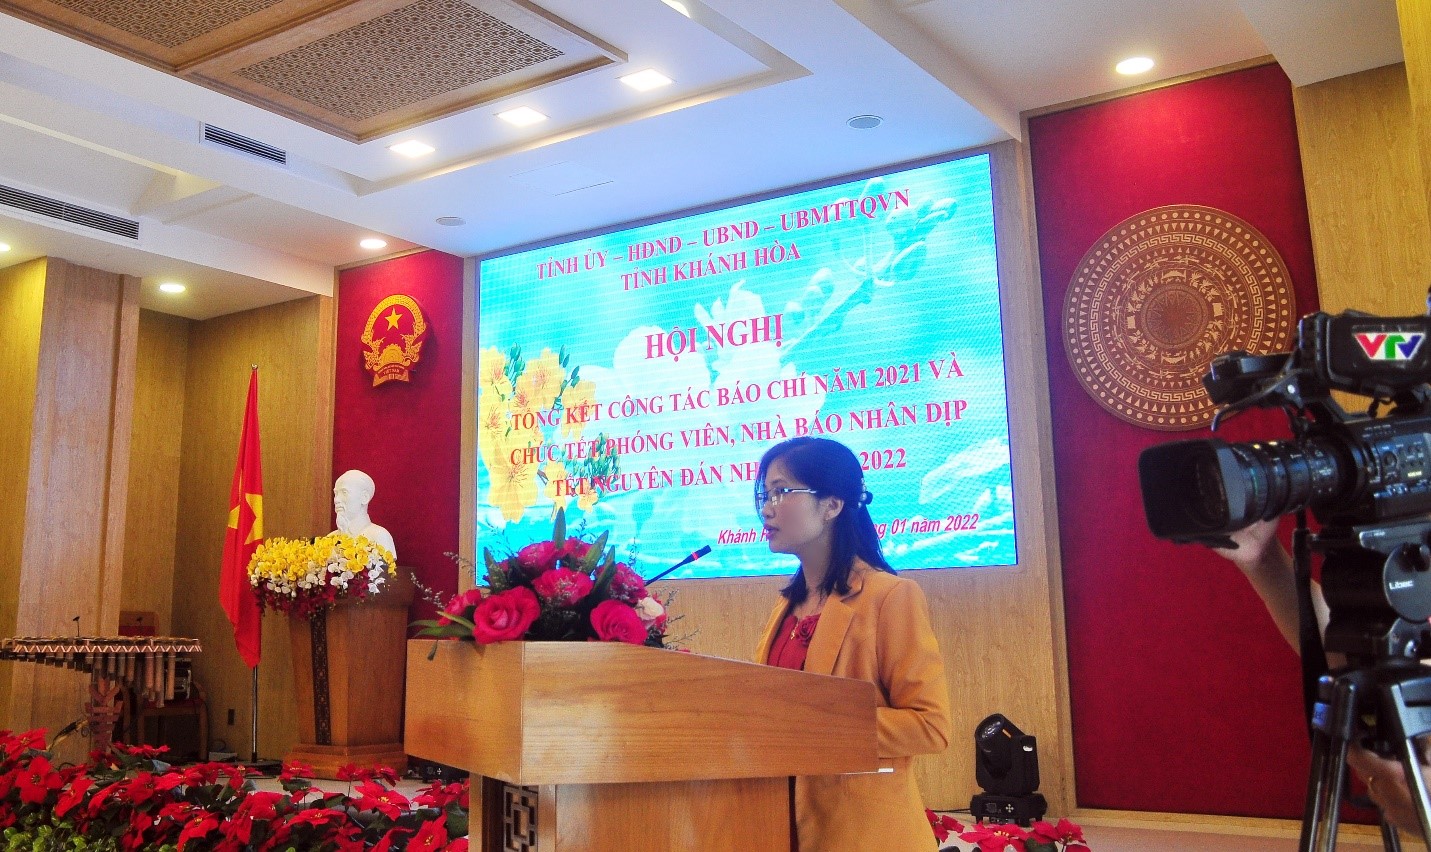 Bà Lưu Hồng Vân, Phó Ban Tuyên Giáo Tỉnh Ủy Tổng kết công tác Báo chí năm 2021